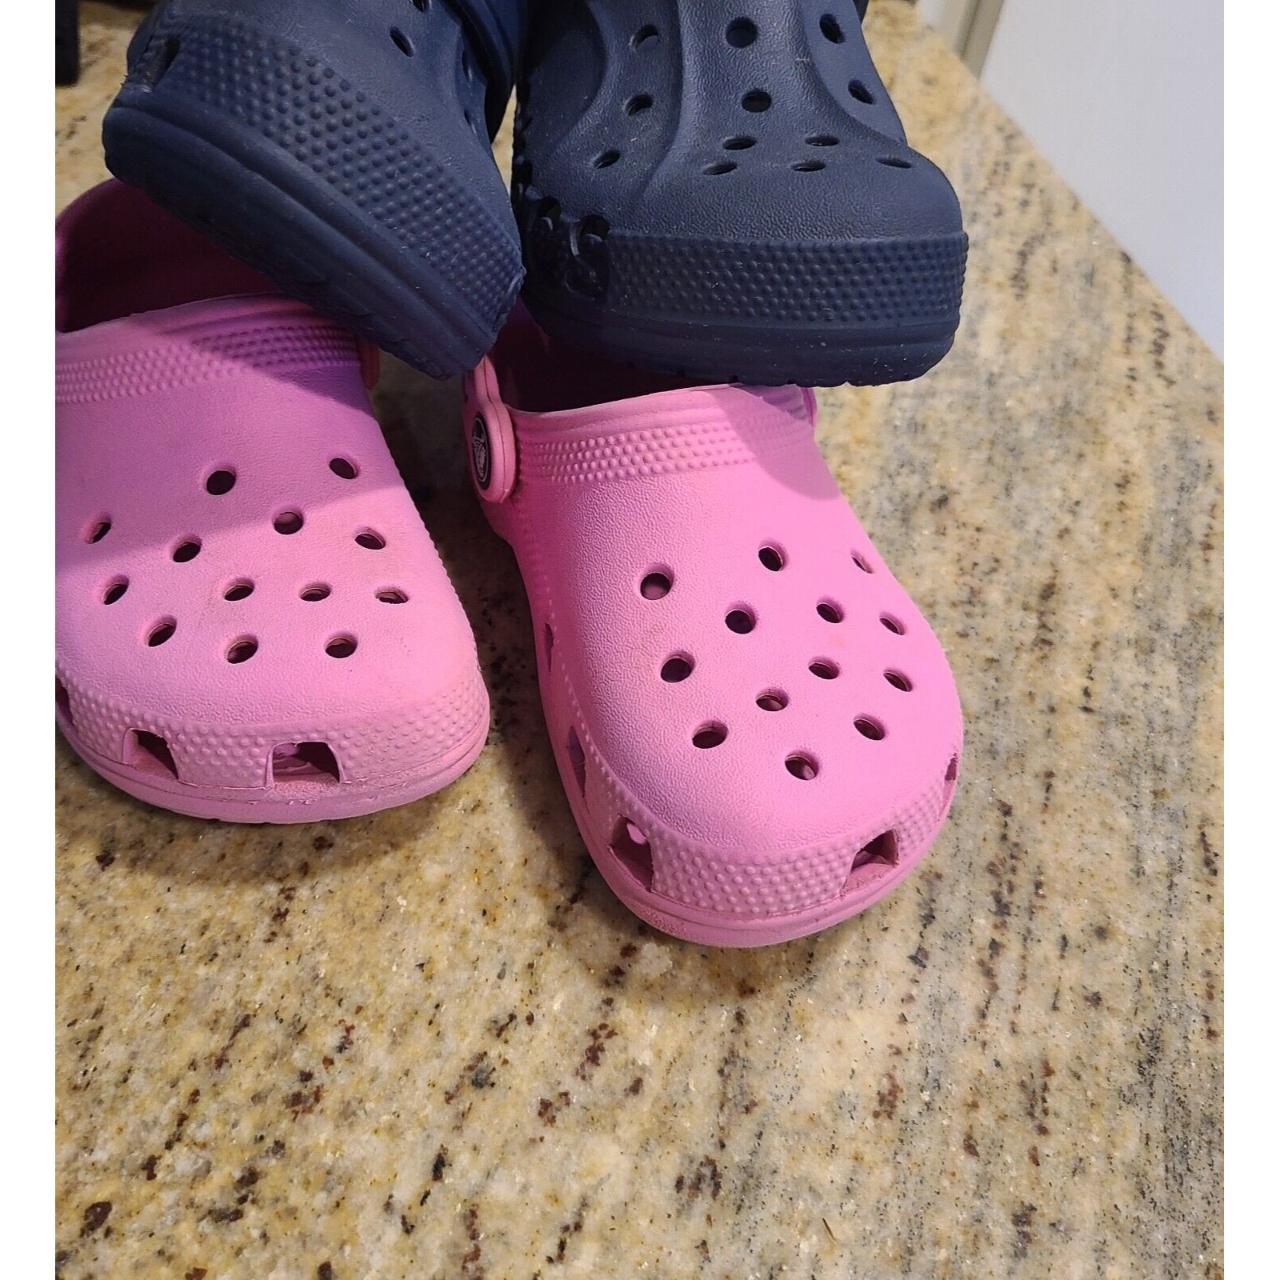 2 Pair CROCS Sandals Pink Child Size 9 & Blue Child... - Depop